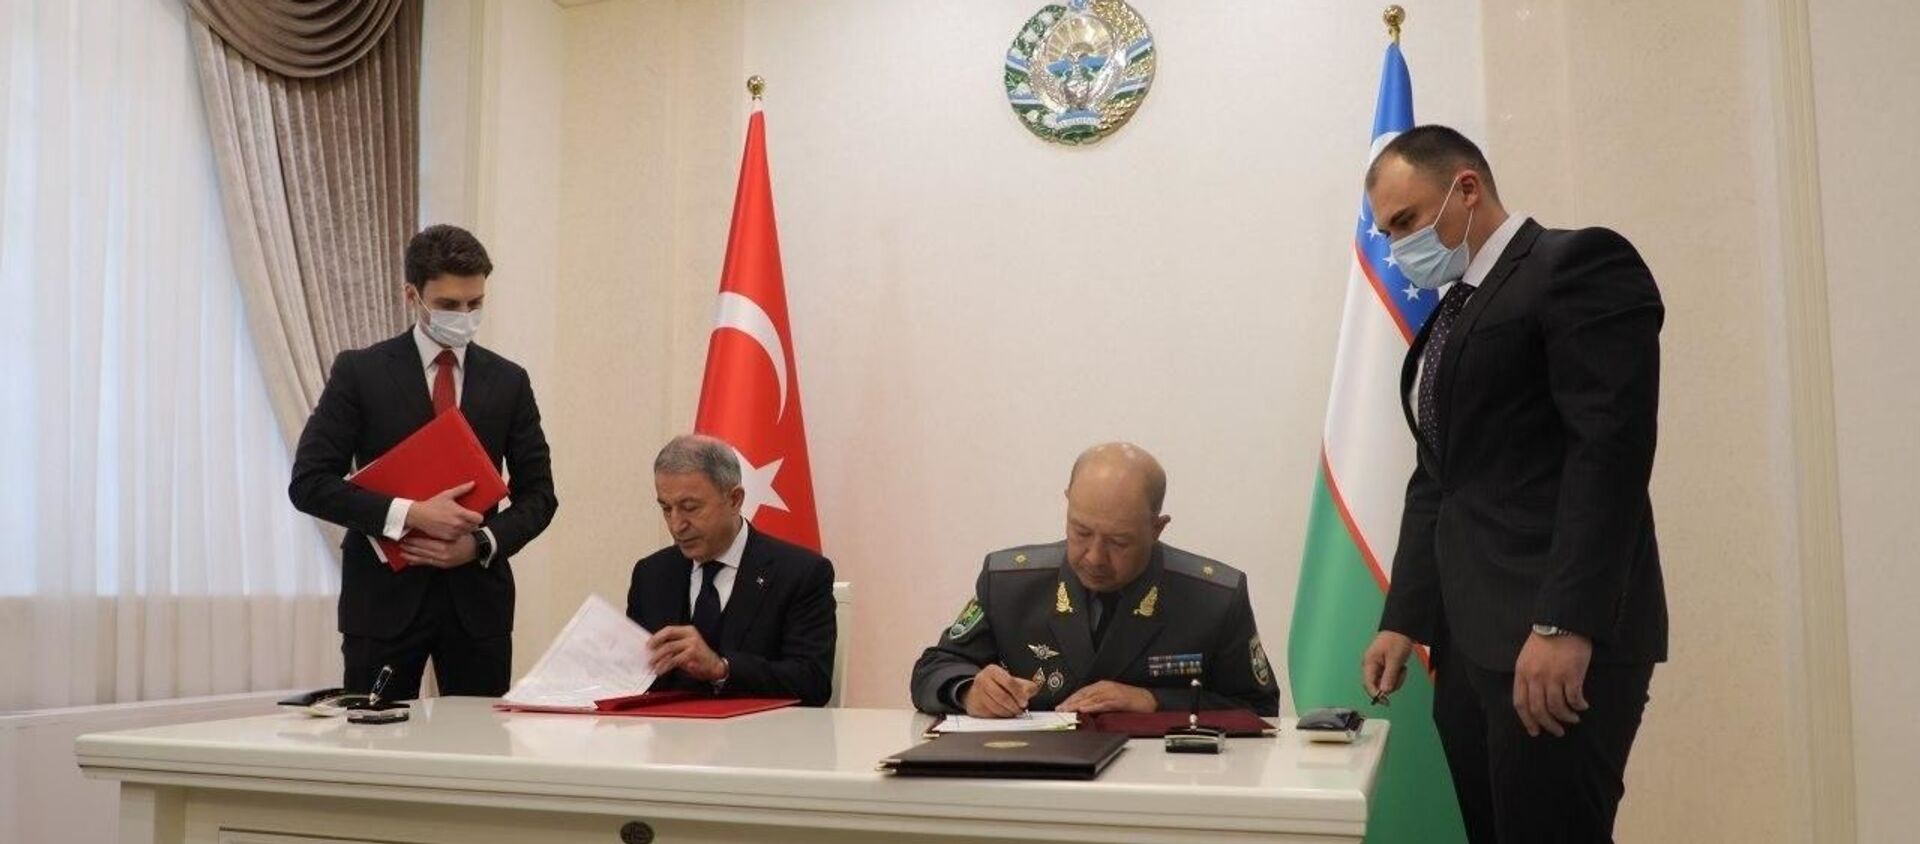 Узбекистан и Турция подписали соглашение о развитии военного и военно-технического сотрудничества - Sputnik Ўзбекистон, 1920, 28.10.2020